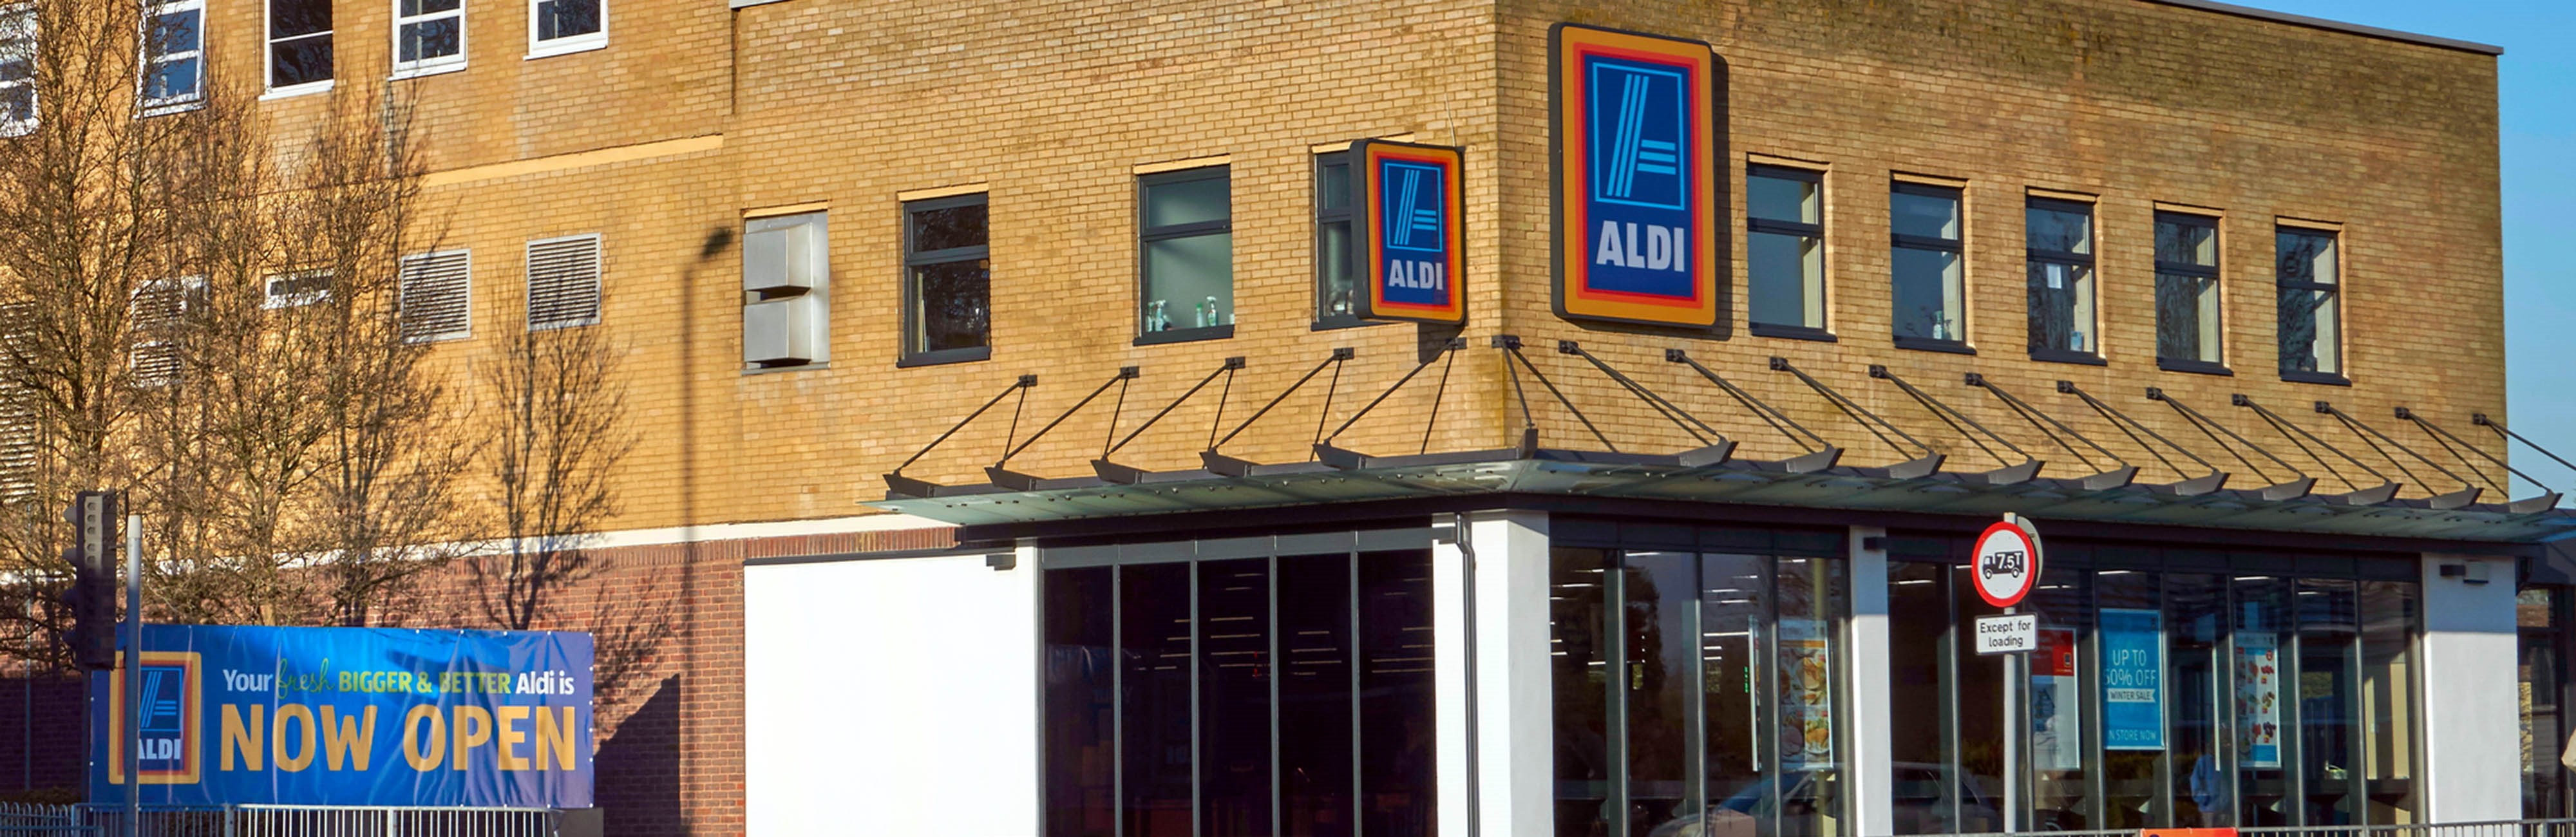 Aldi store in UK. Photo: Gery Perkin